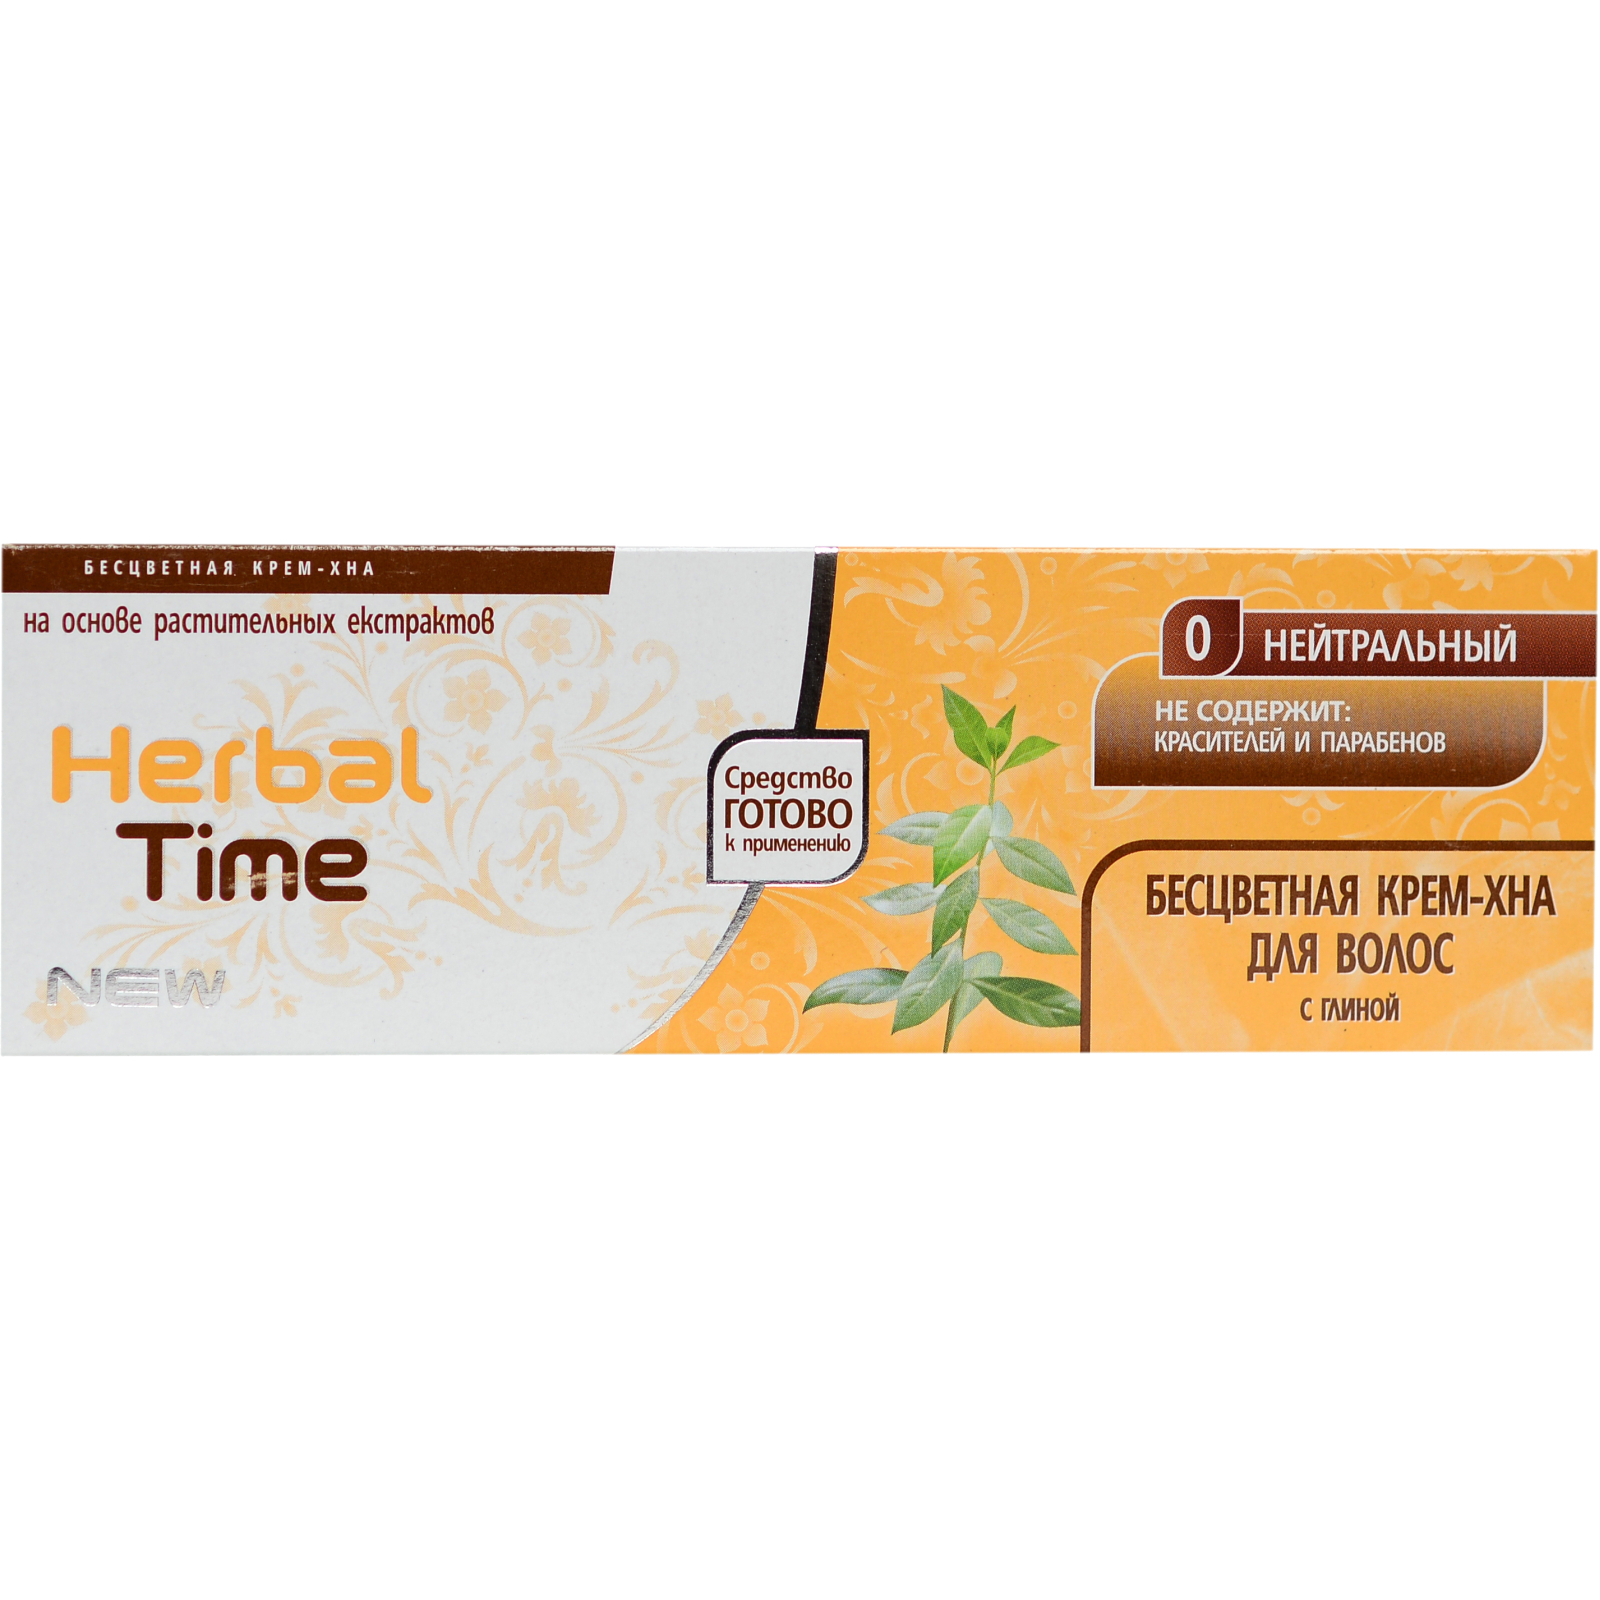 Хна Herbal Time 0 - Нейтральный 75 мл (3800010501279)